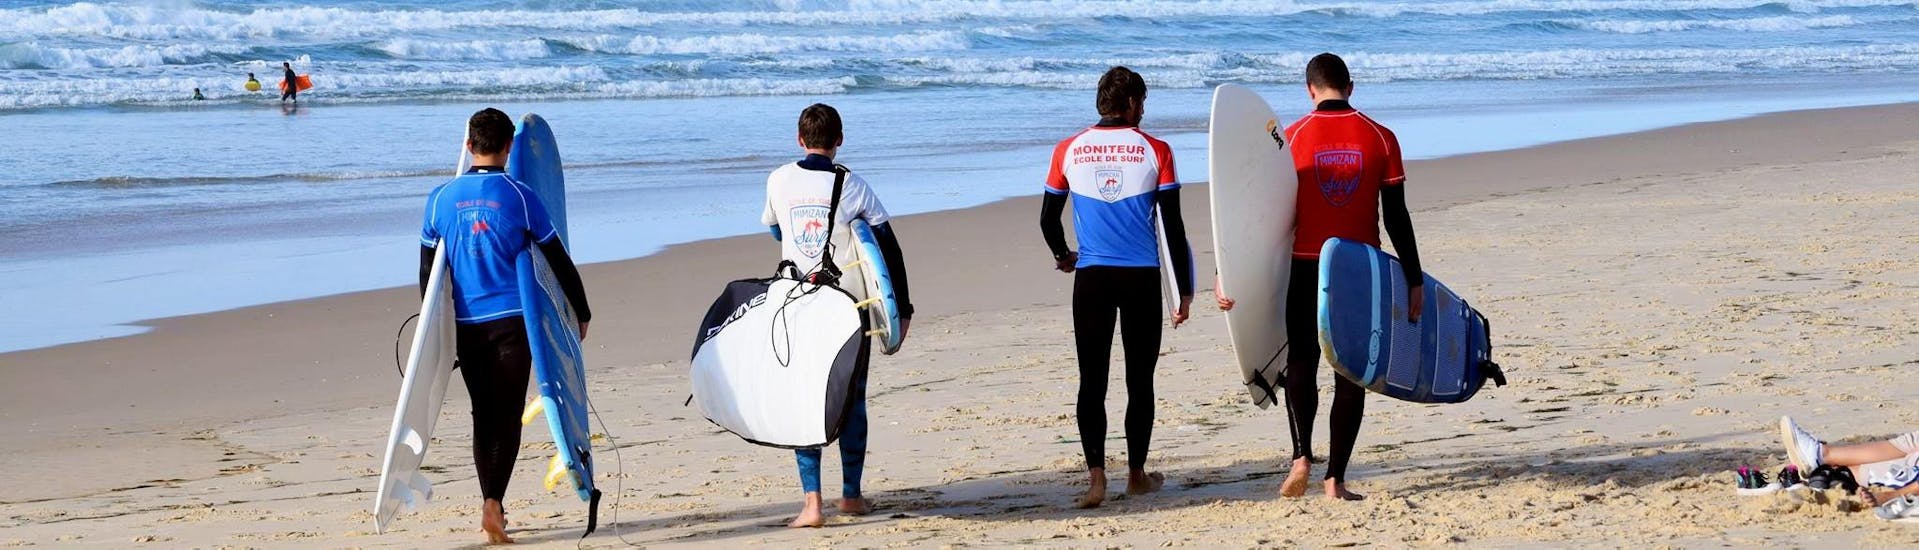 Lezioni di surf a Mimizan da 6 anni per surfisti avanzati.